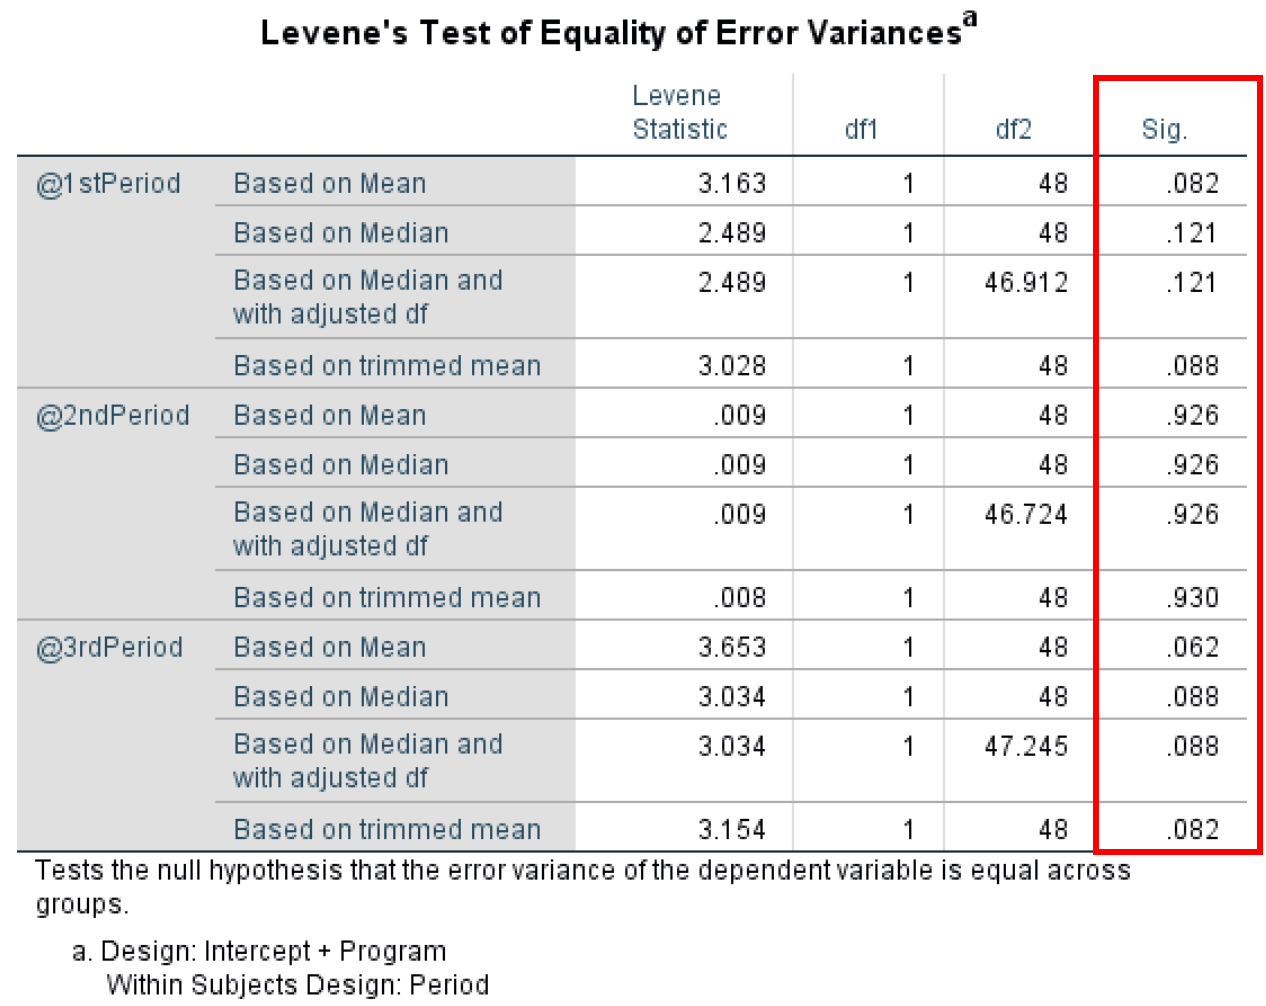 Levene's Test of Equality of Error Variances. Source: uedufy.com